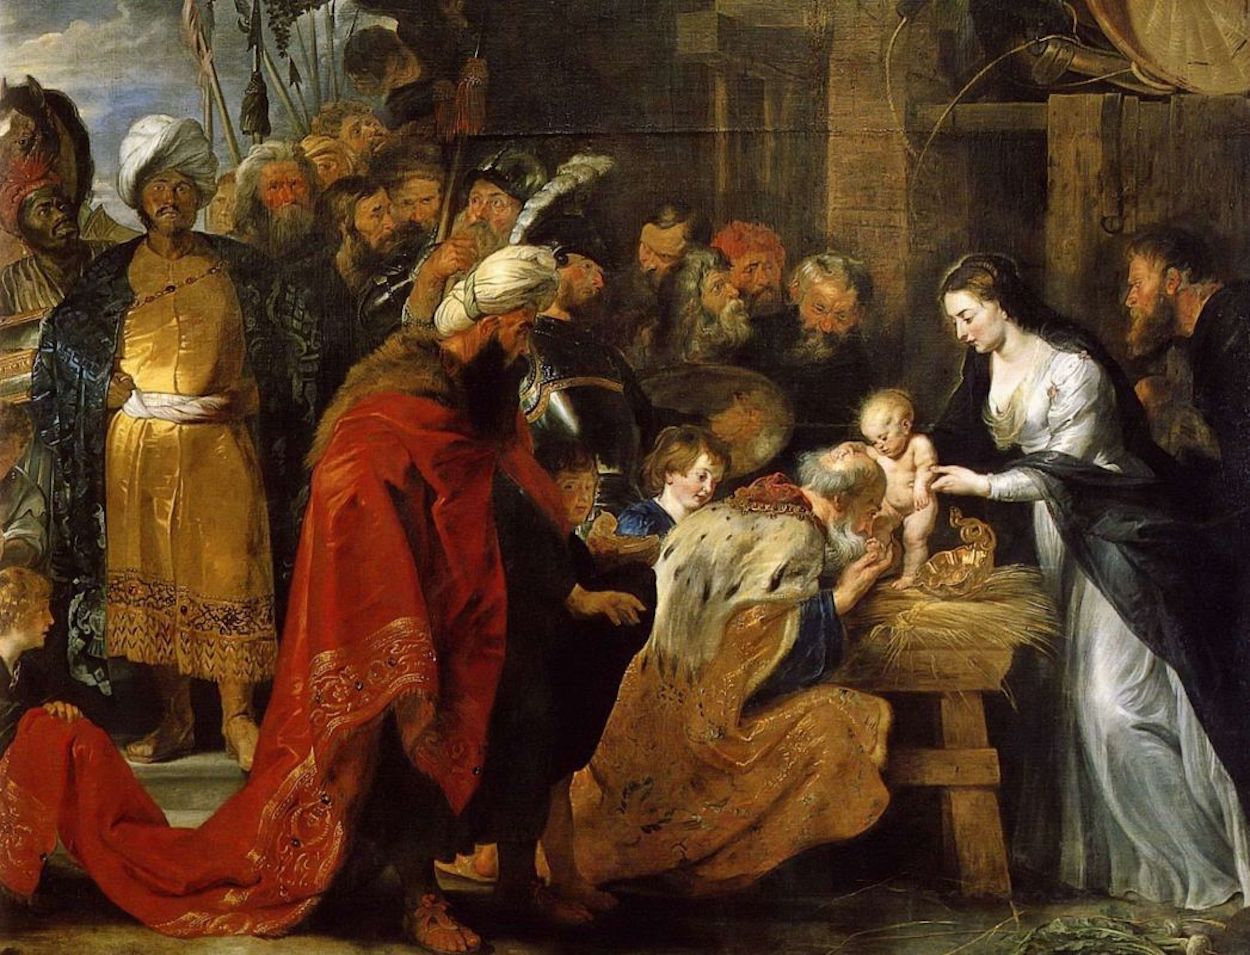 Anbetung der Könige by Peter Paul Rubens - 1616-1617 - 251 × 338 cm Musée des beaux-arts de Lyon